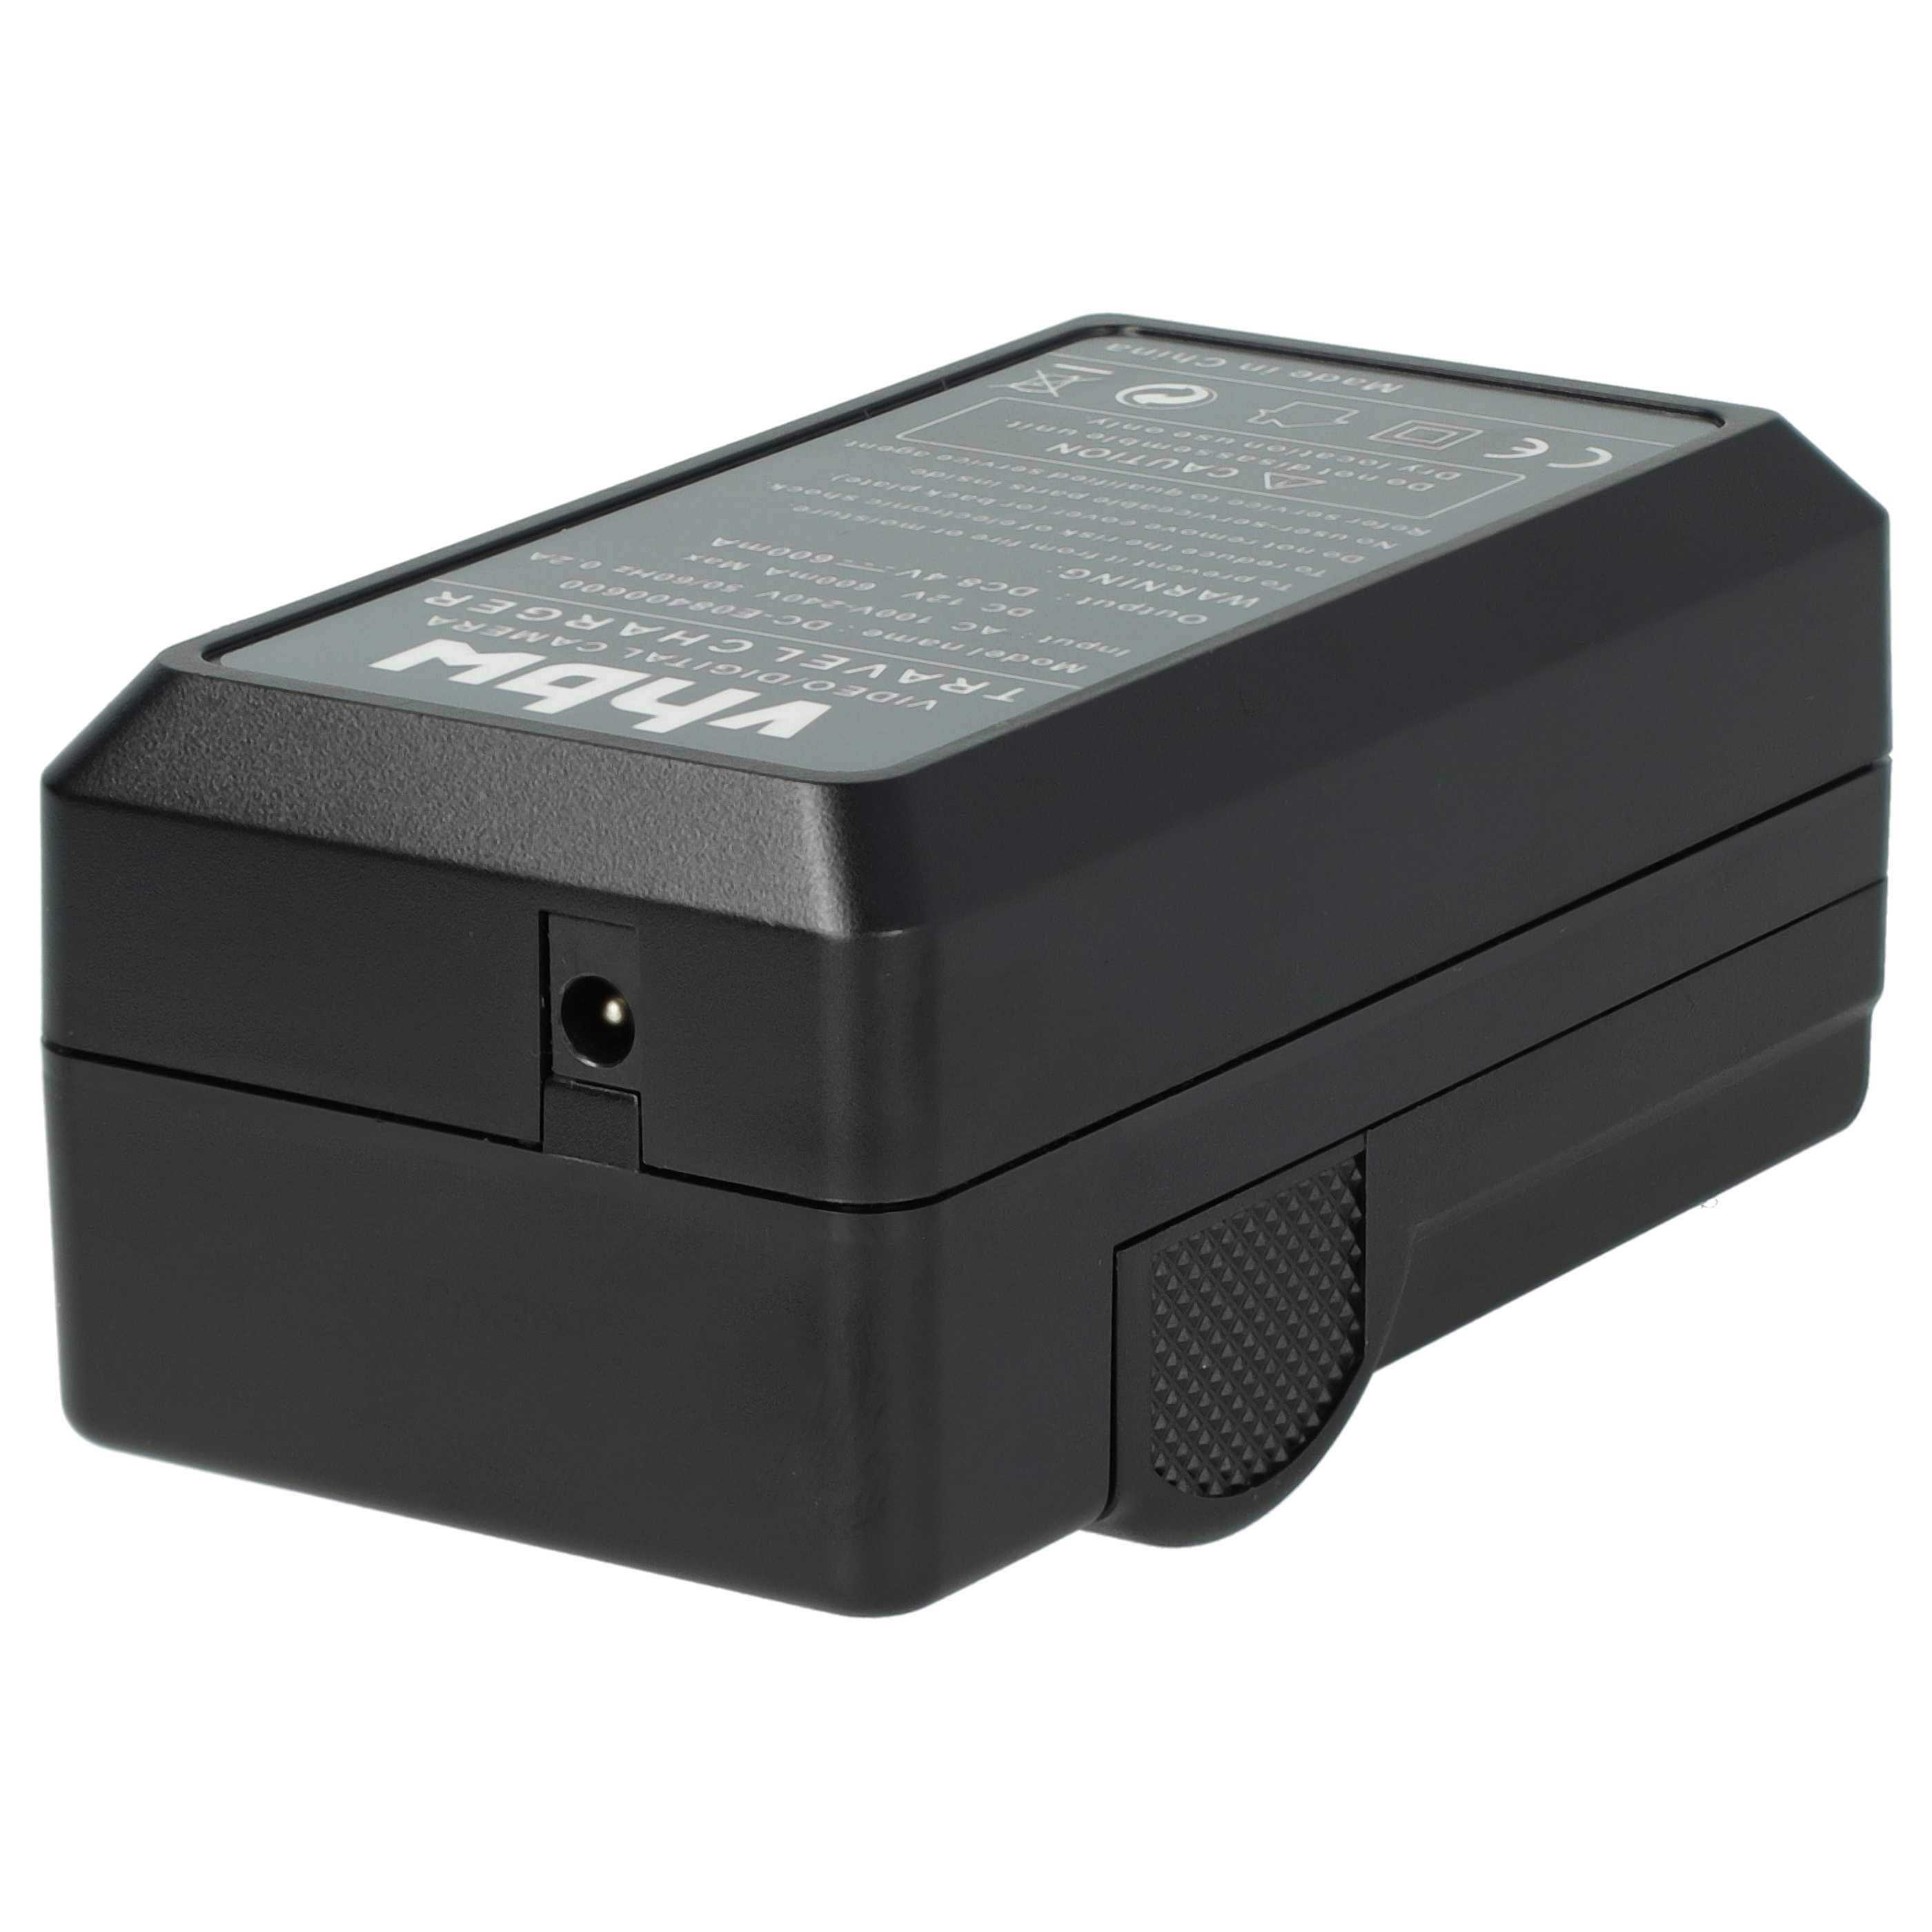 Ładowarka do aparatu Lumix DC-GH5 i innych - ładowarka akumulatora 0,6 A, 8,4 V